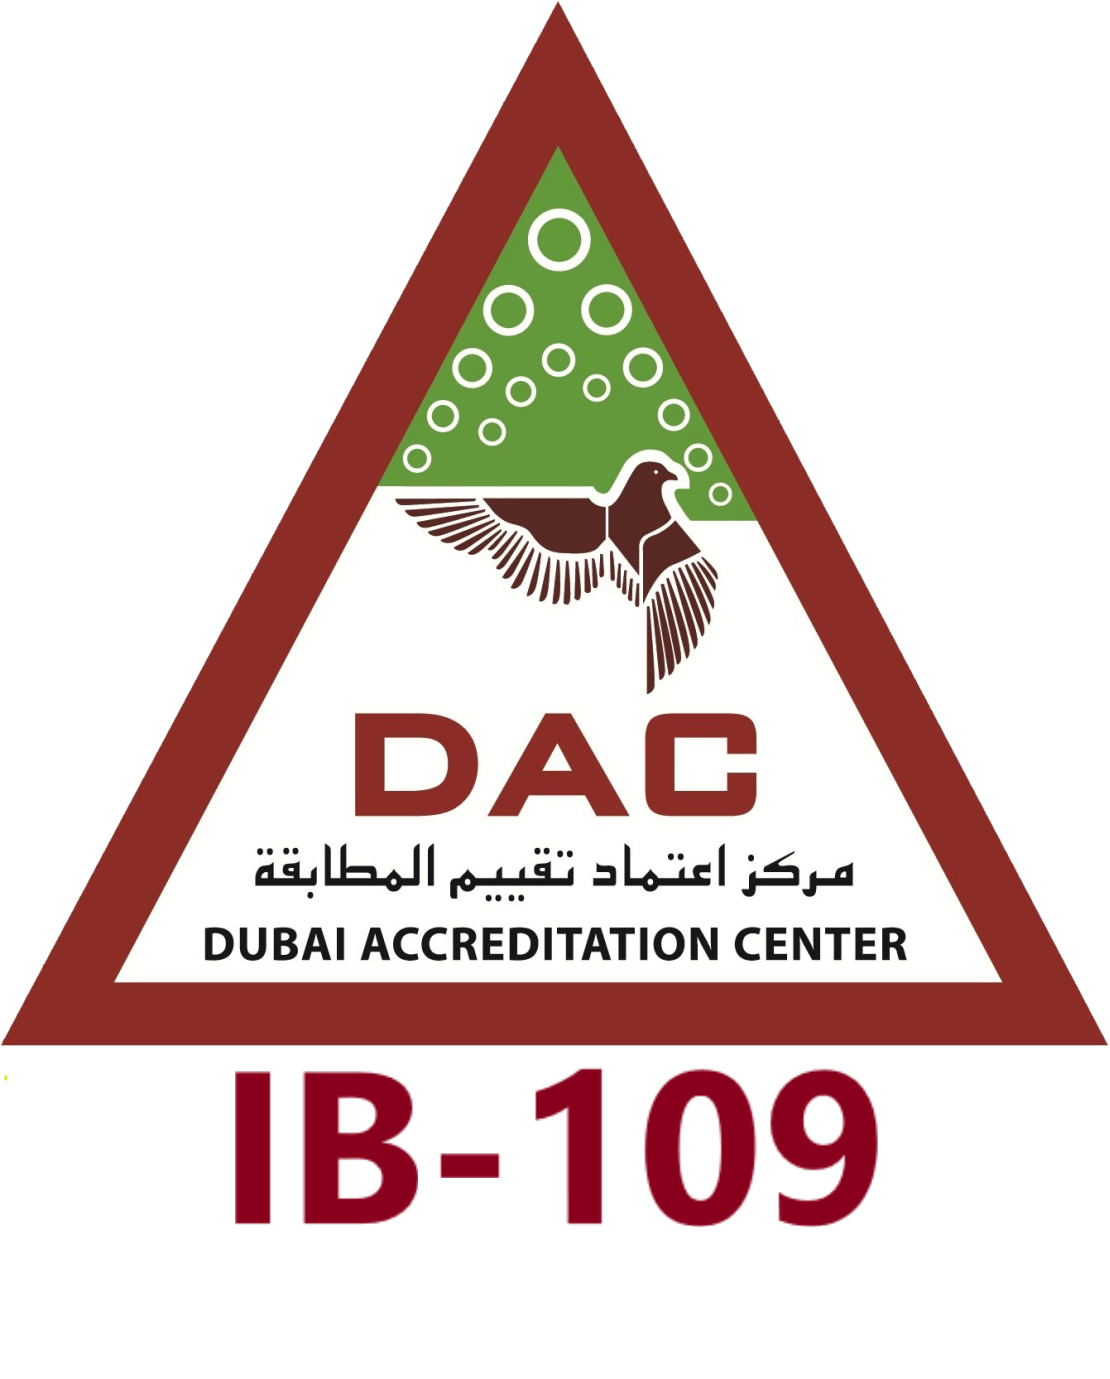 DAC Logo - DAC-LOGO – Valpas Safety